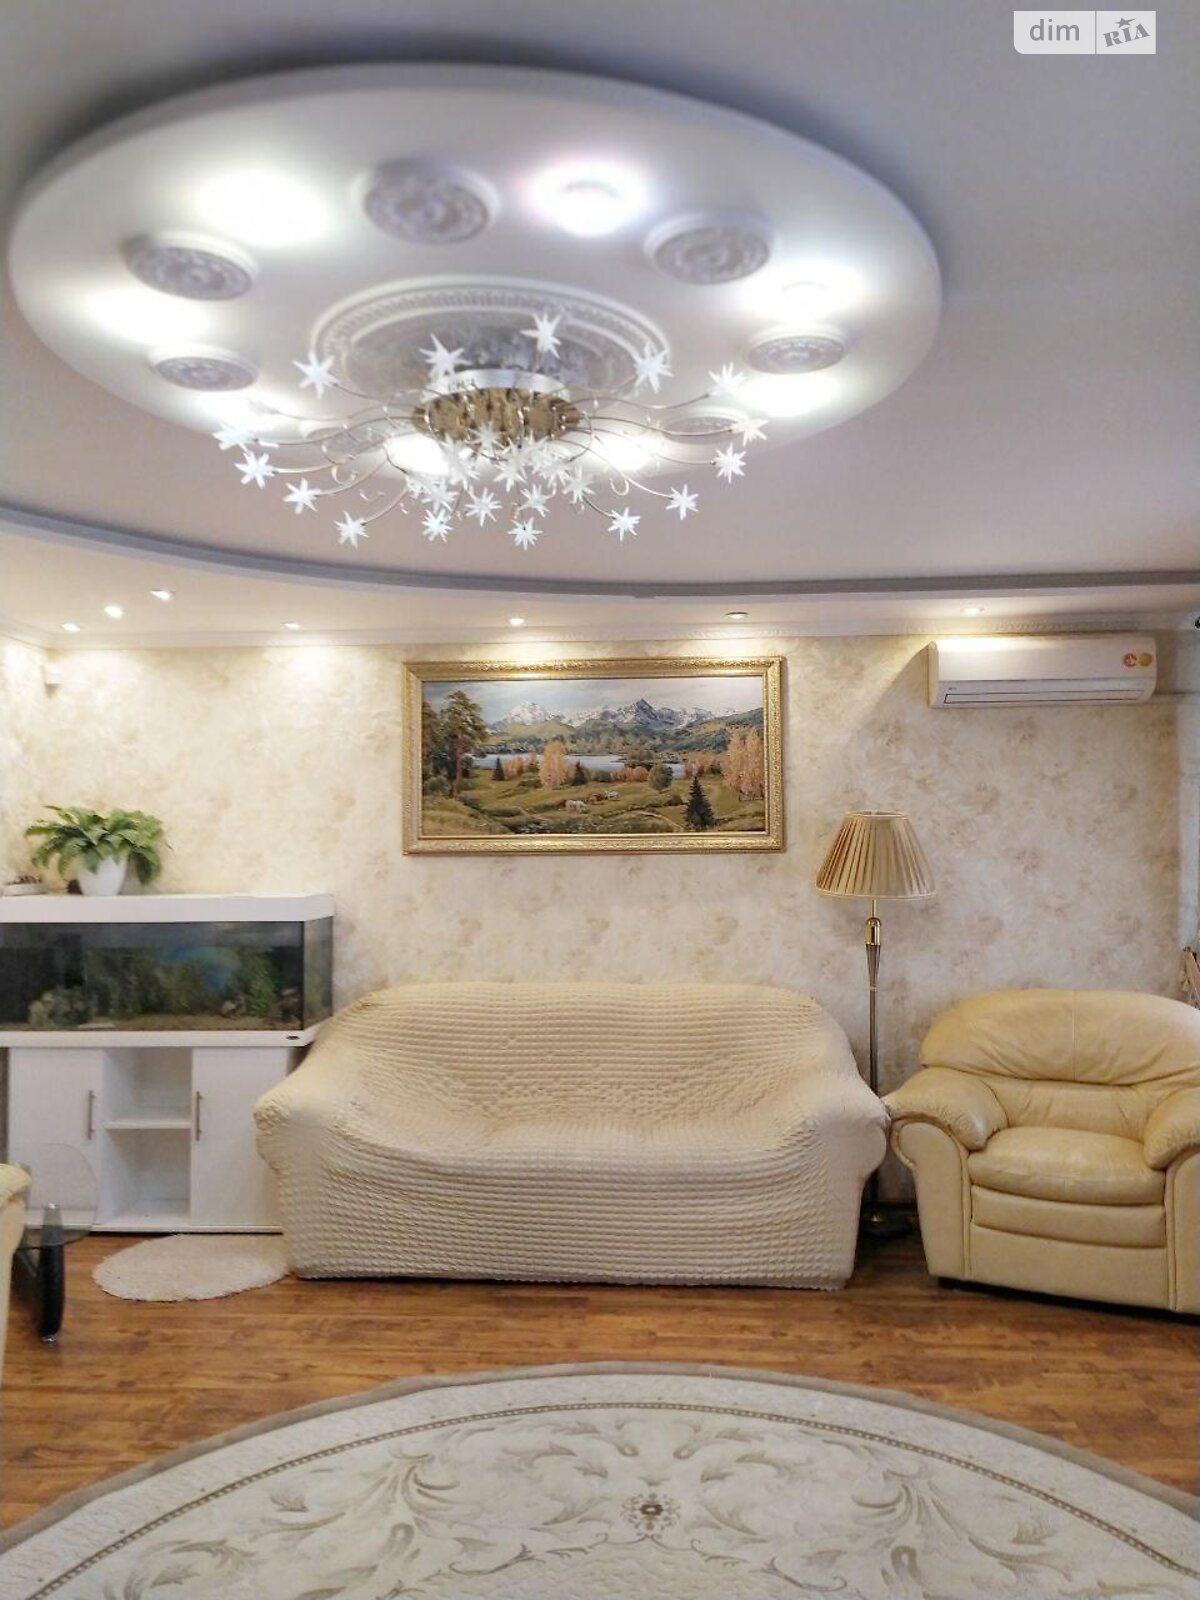 Продажа трехкомнатной квартиры в Одессе, на ул. Владимира Высоцкого 23, район Поселок Котовского фото 1